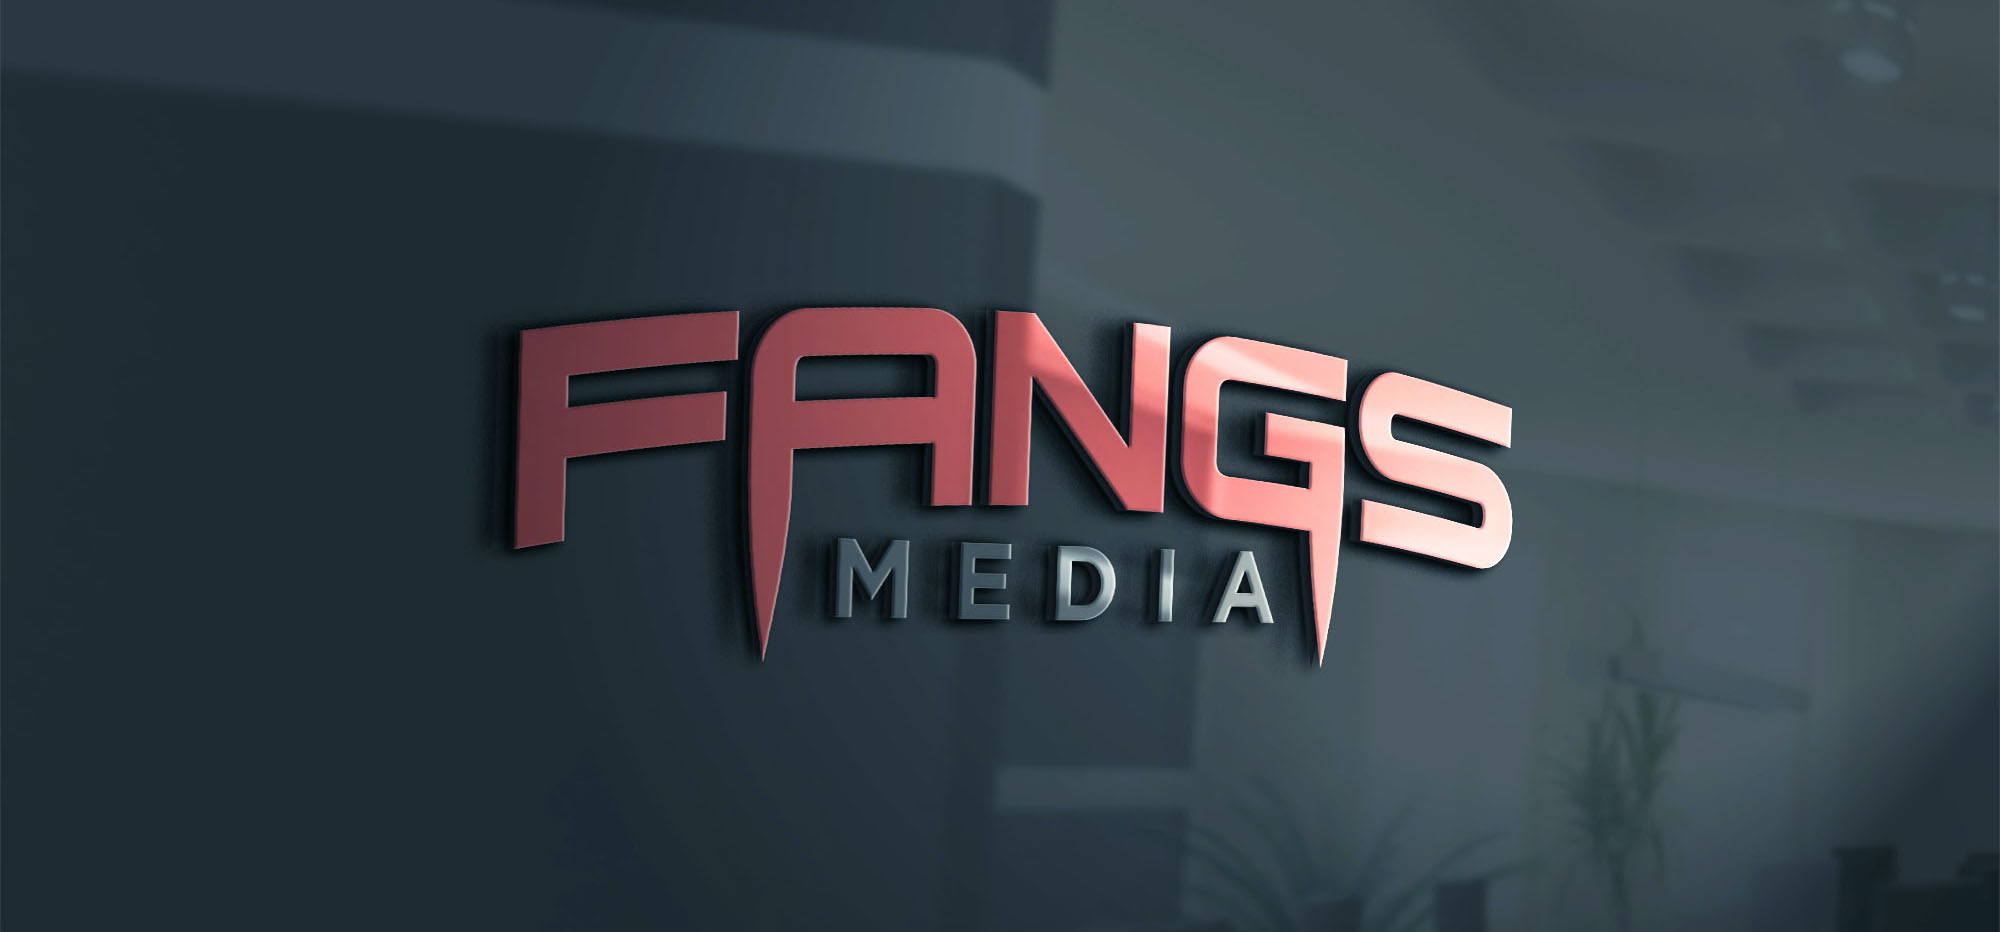 Fangs Media